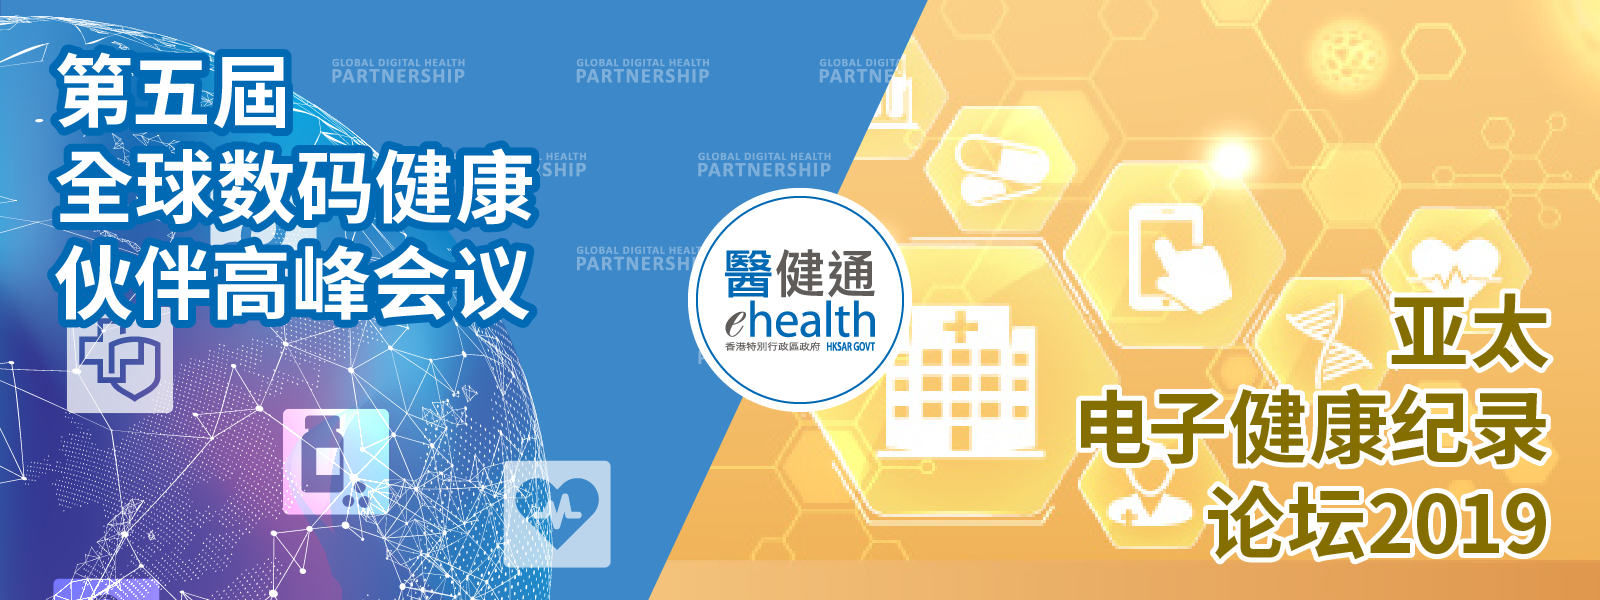 香港举办全球数码健康伙伴高峰会议和亚太电子健康纪录论坛2019